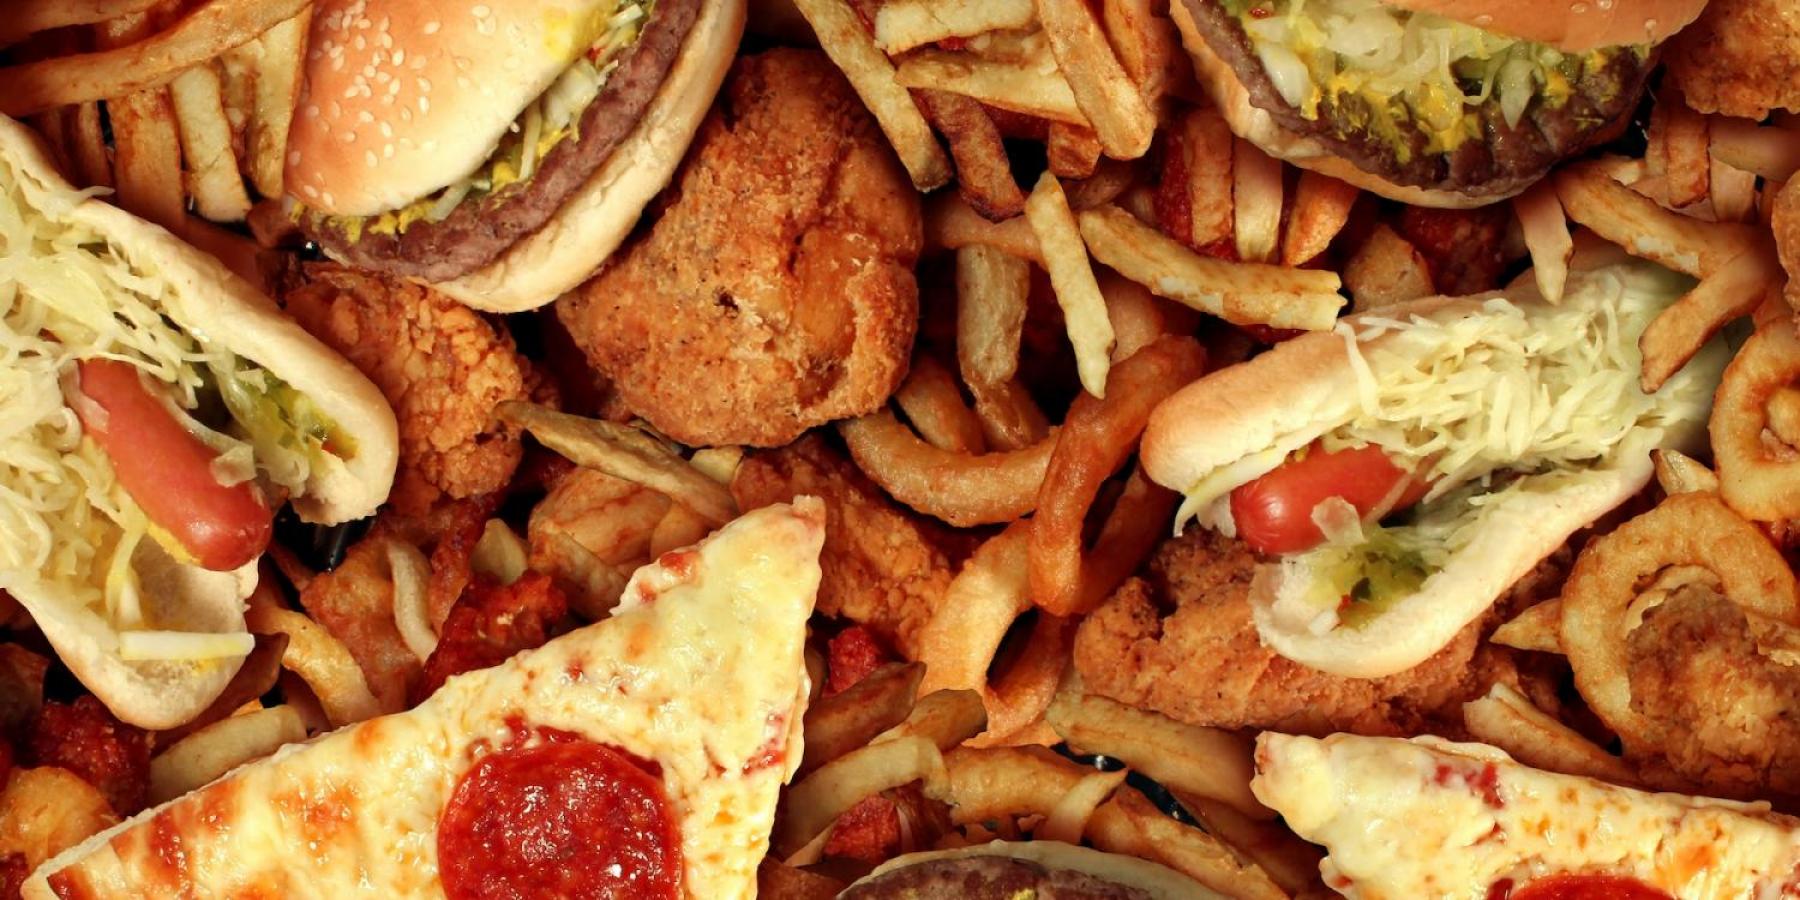 Trans fats in junk food